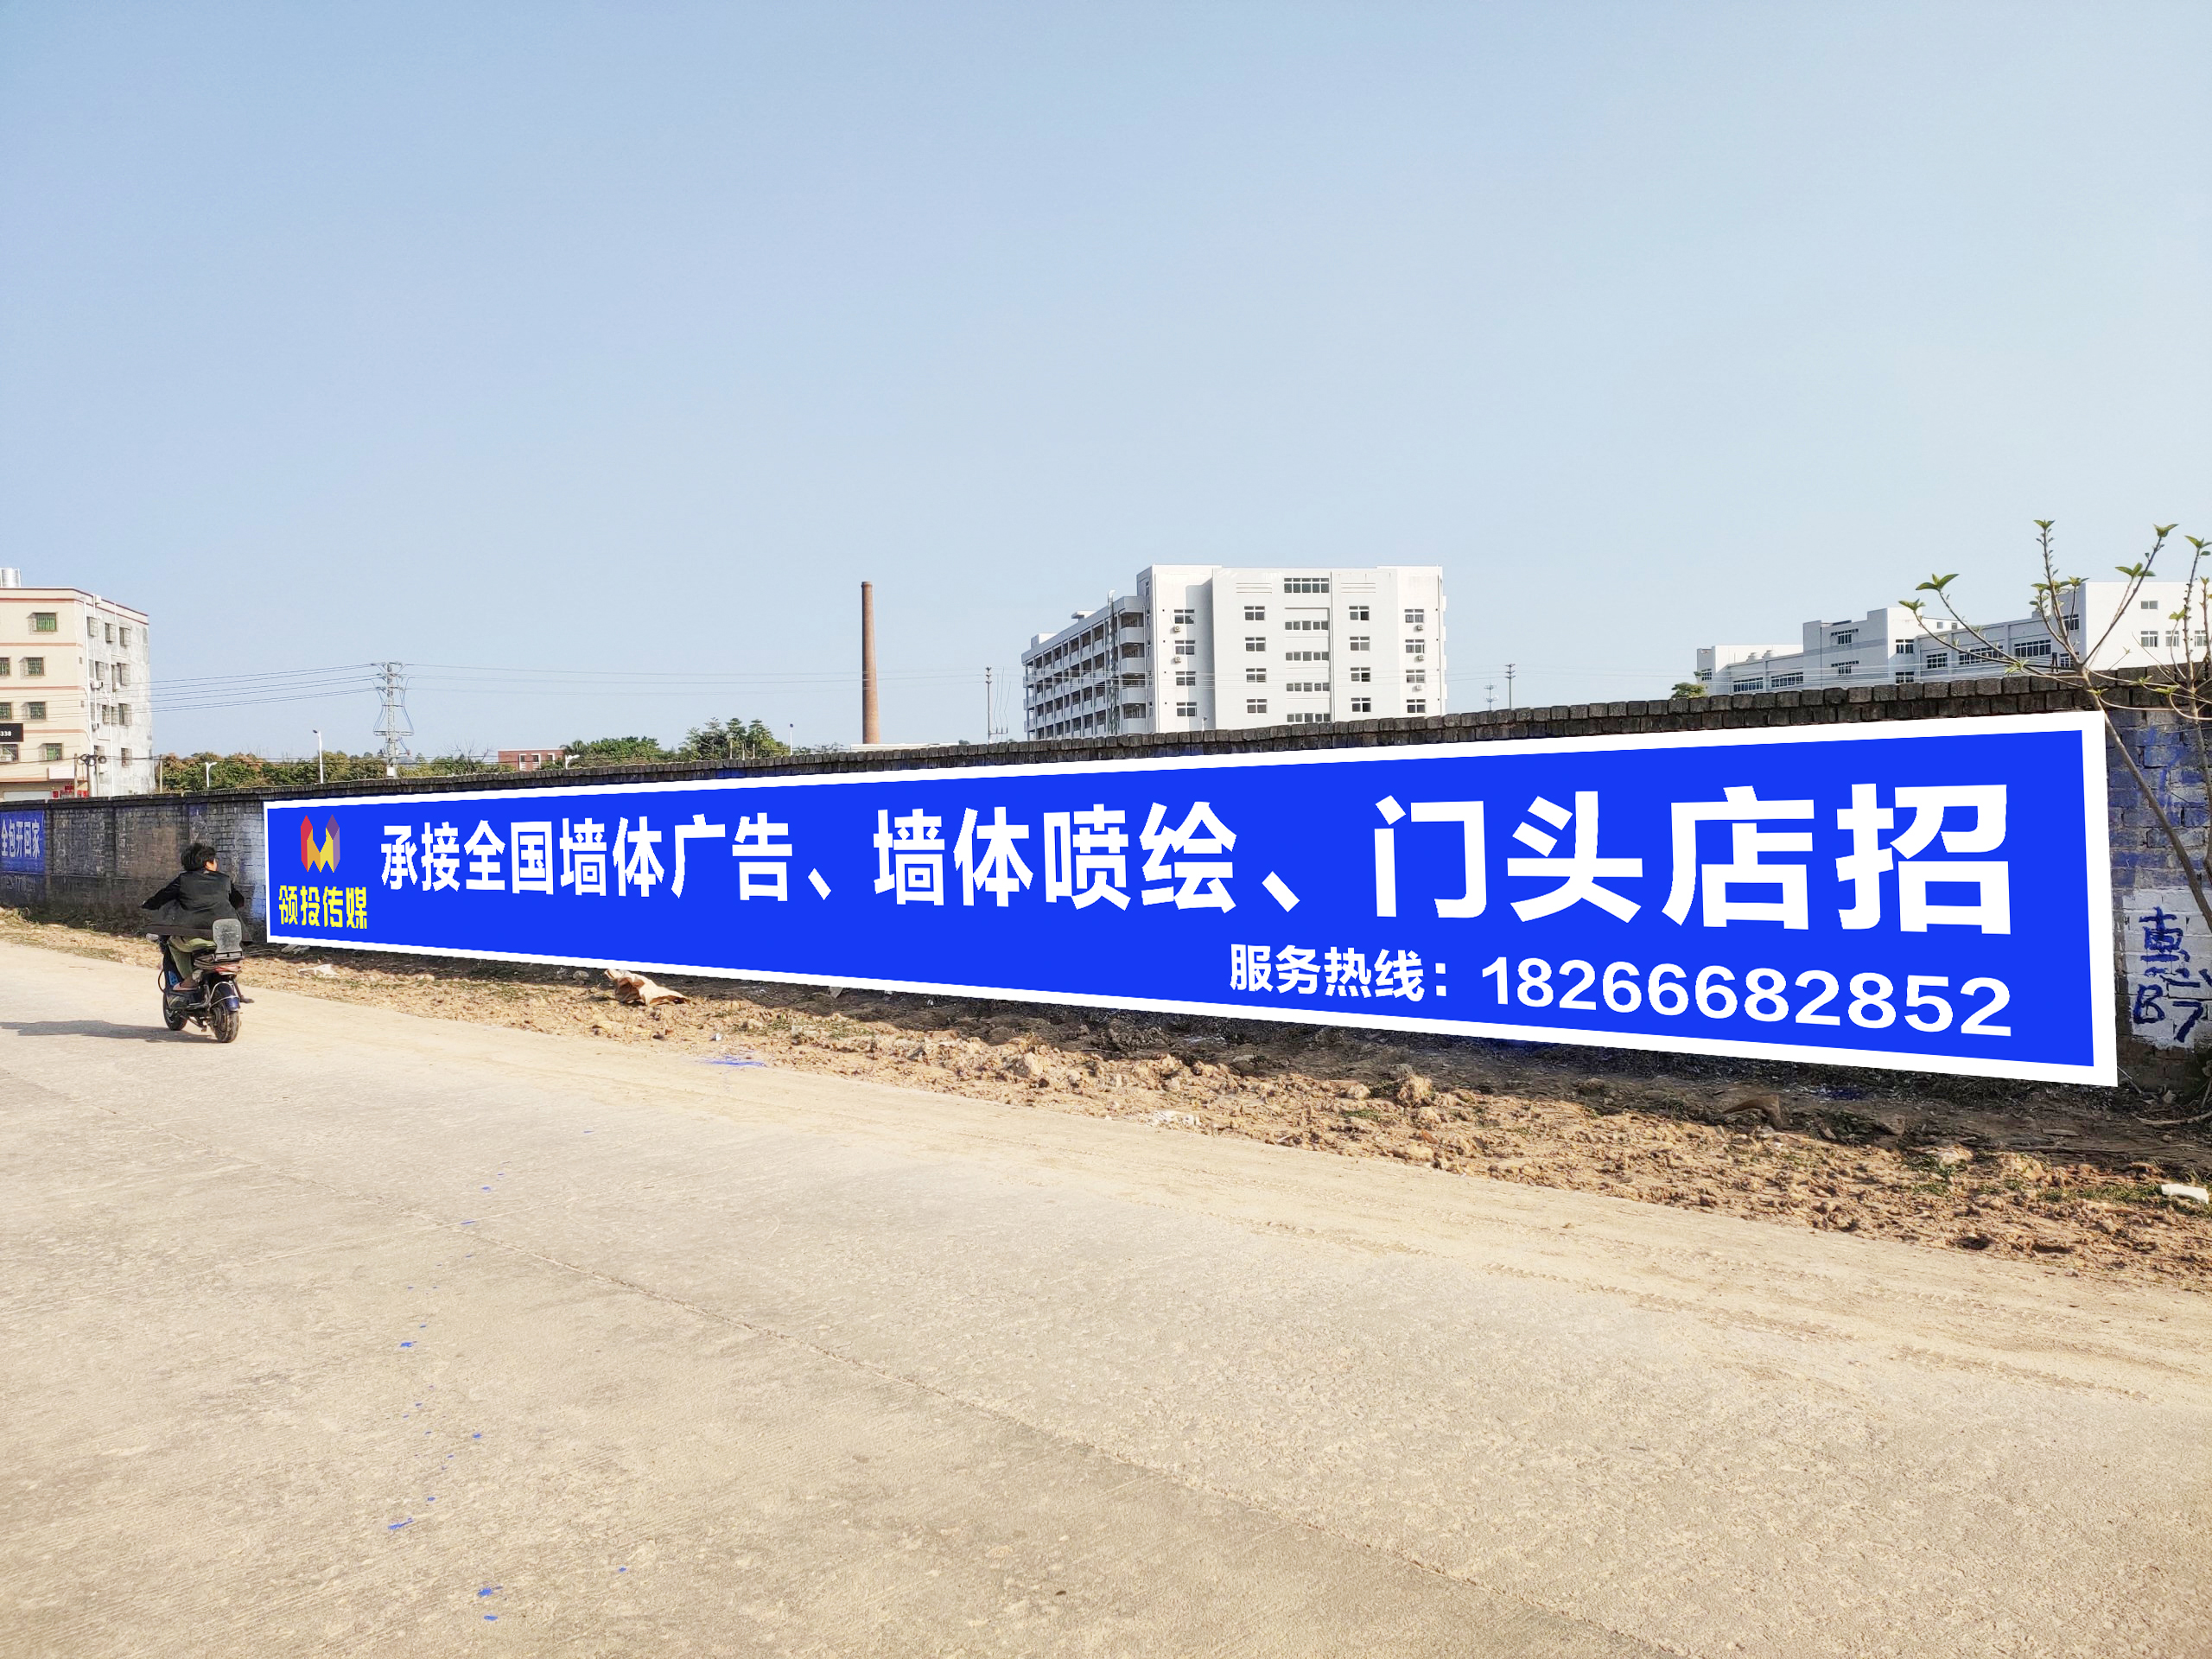 北京刷墙广告,北京墙体广告,北京墙体喷绘广告北京墙体彩绘绘画